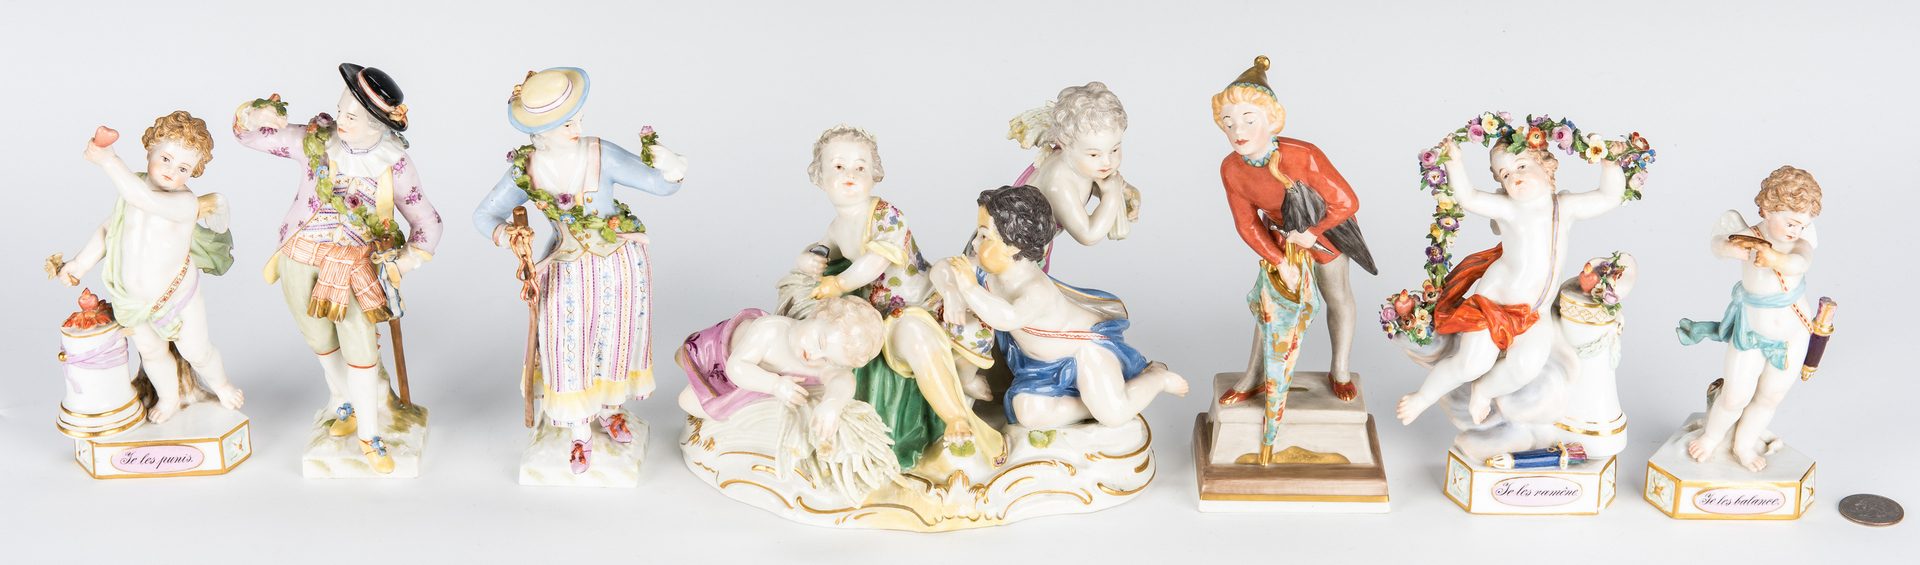 Lot 238: 7 Porcelain Figurines, incl. Meissen, Royal Copenhagen